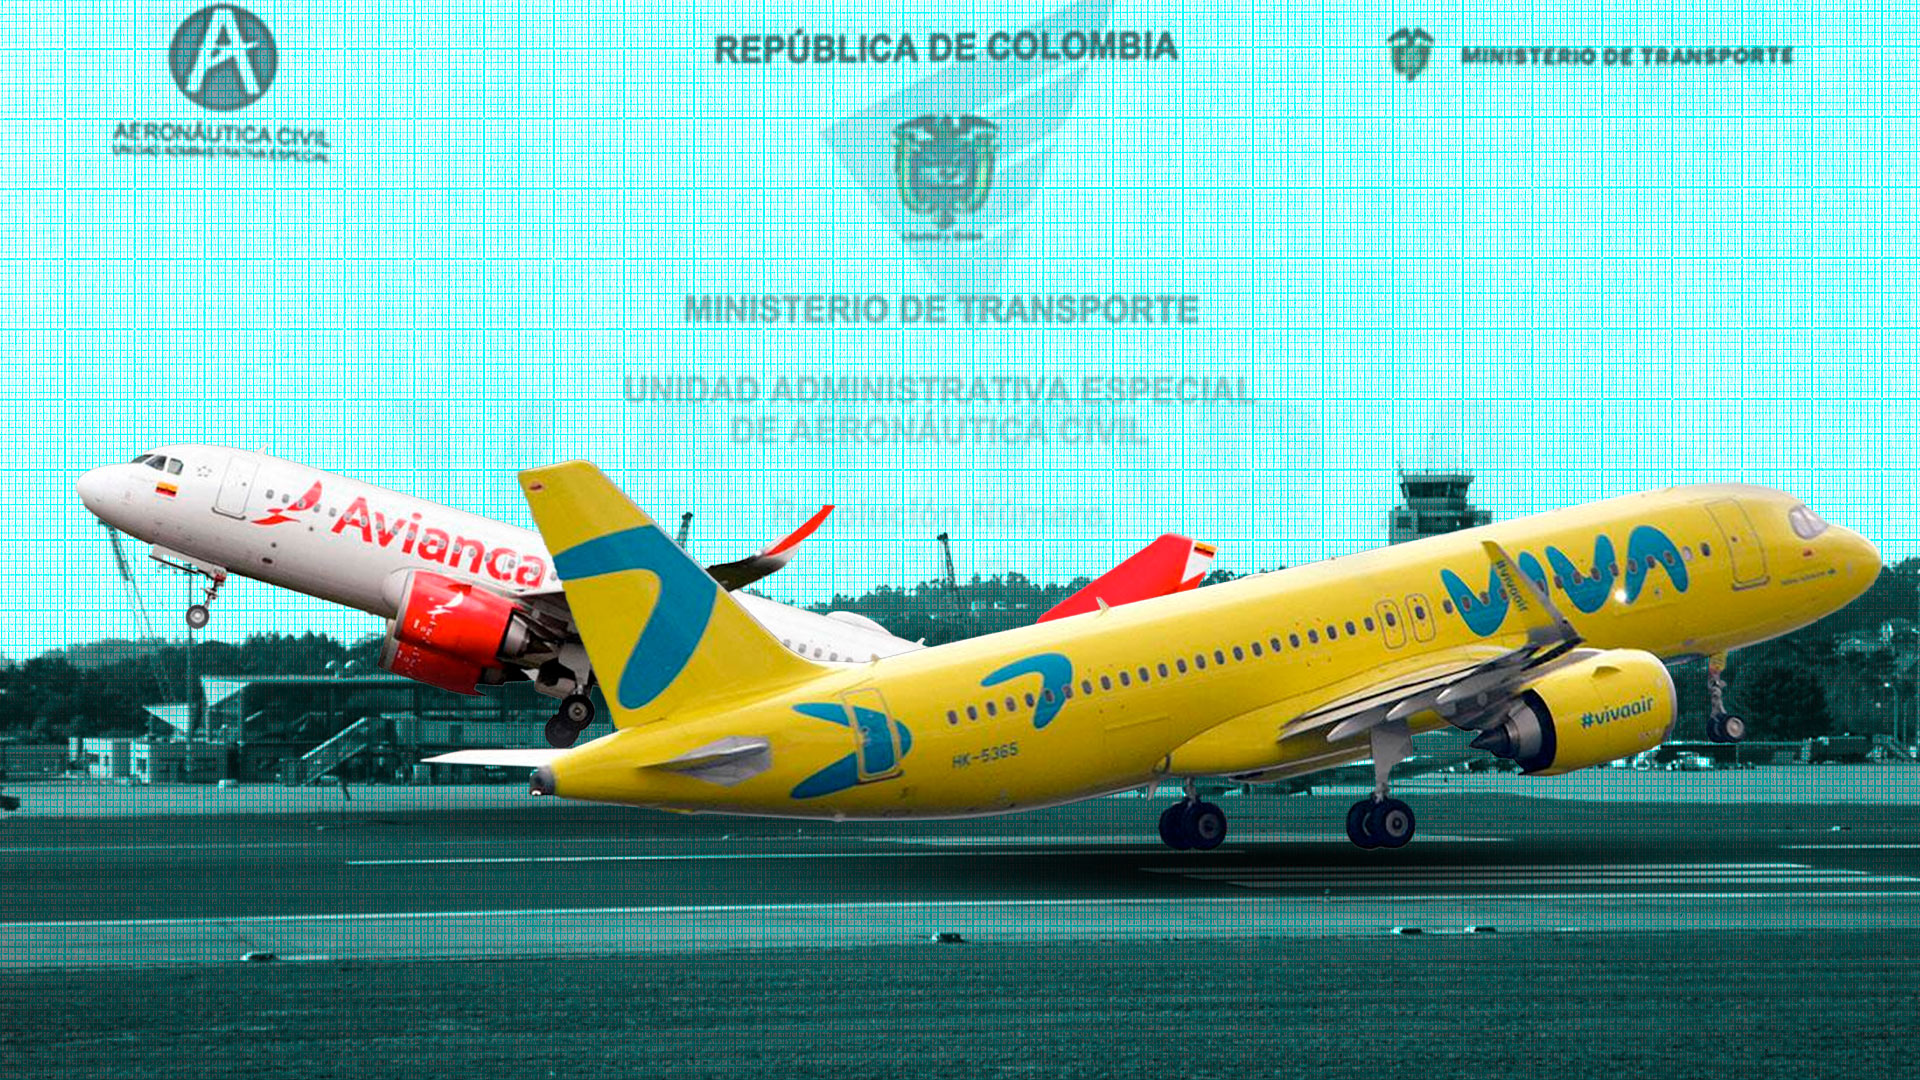 La aprobación con condicionamientos aún no está en firme, aseguró Avianca. Ilustración Jesús Áviles Infobae Colombia